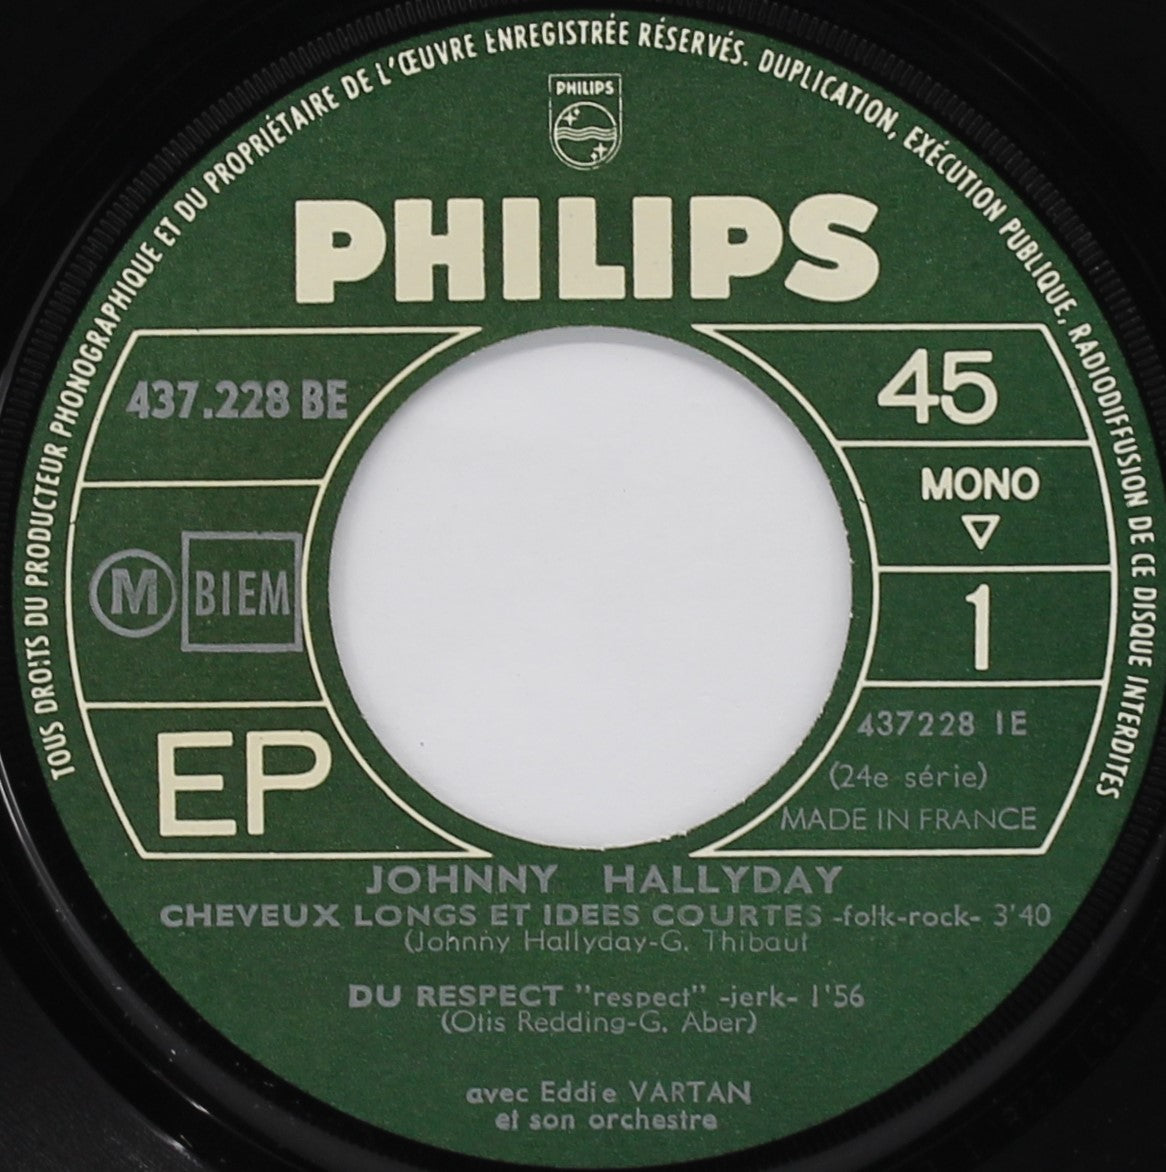 Johnny Hallyday – 24e Série - Cheveux Longs Et Idées Courtes,